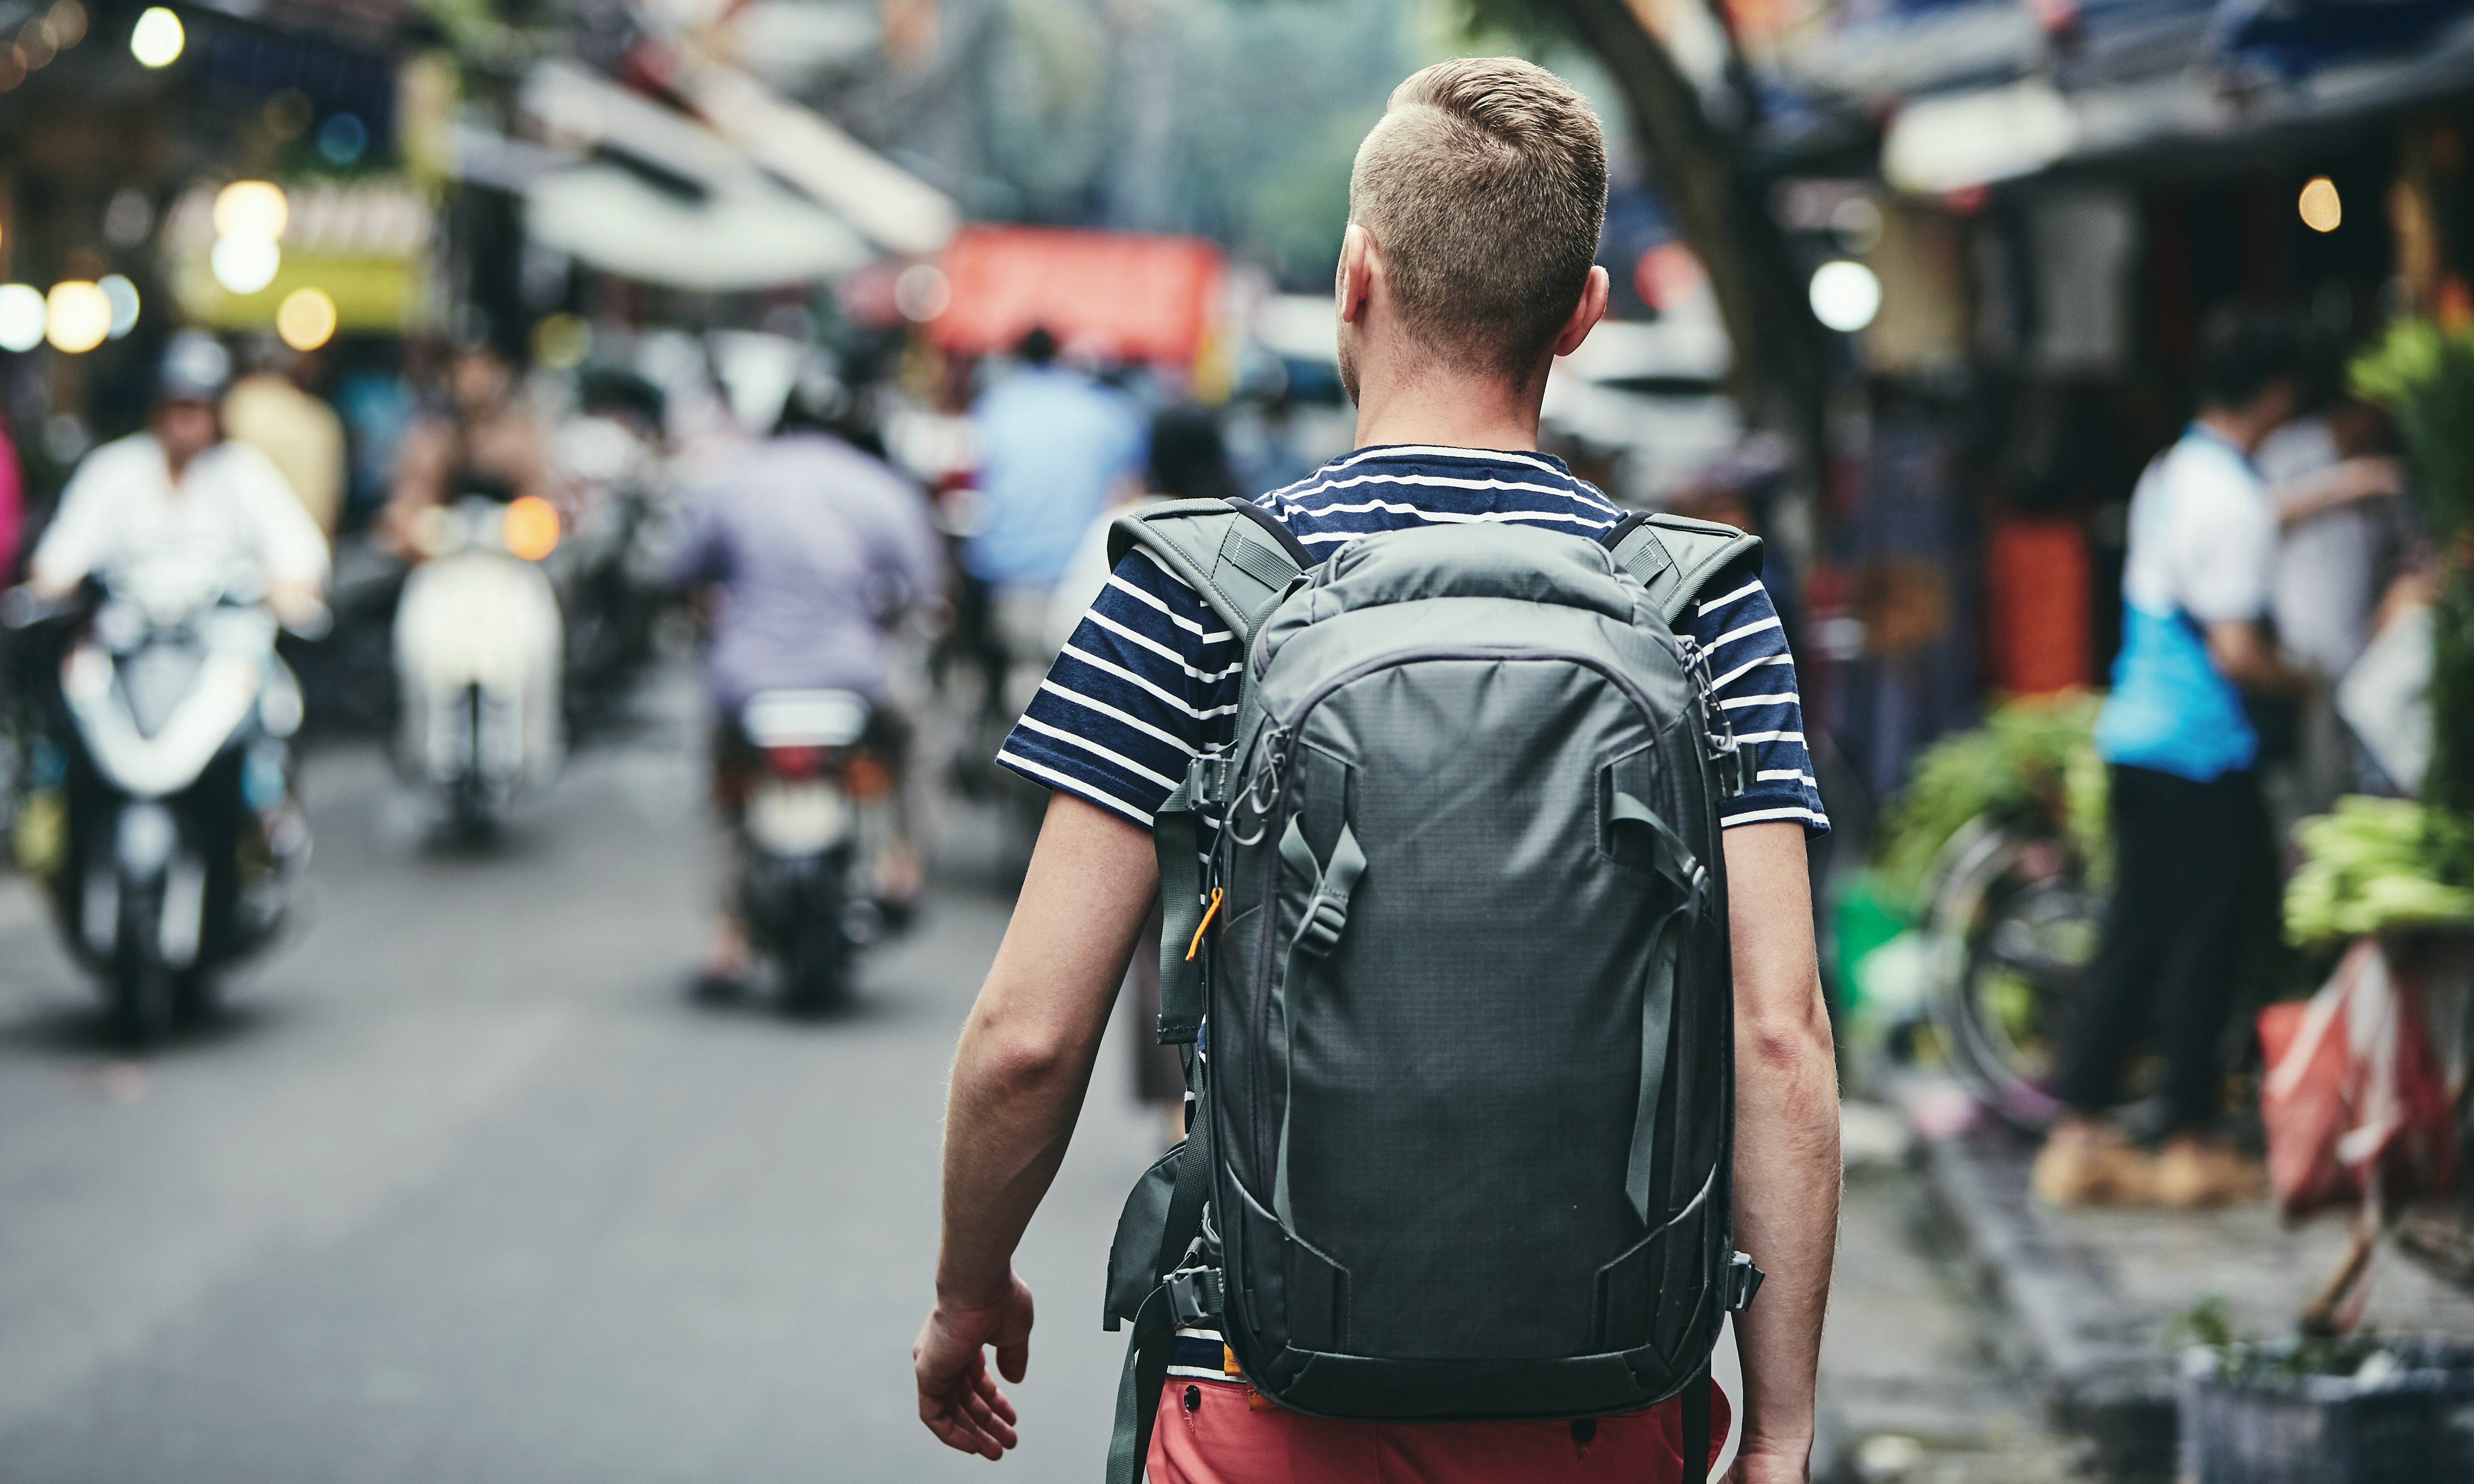 Eminem Backpack Students School Bag USB Travel Bag Shouder Bag Laptop  Ruckpacks